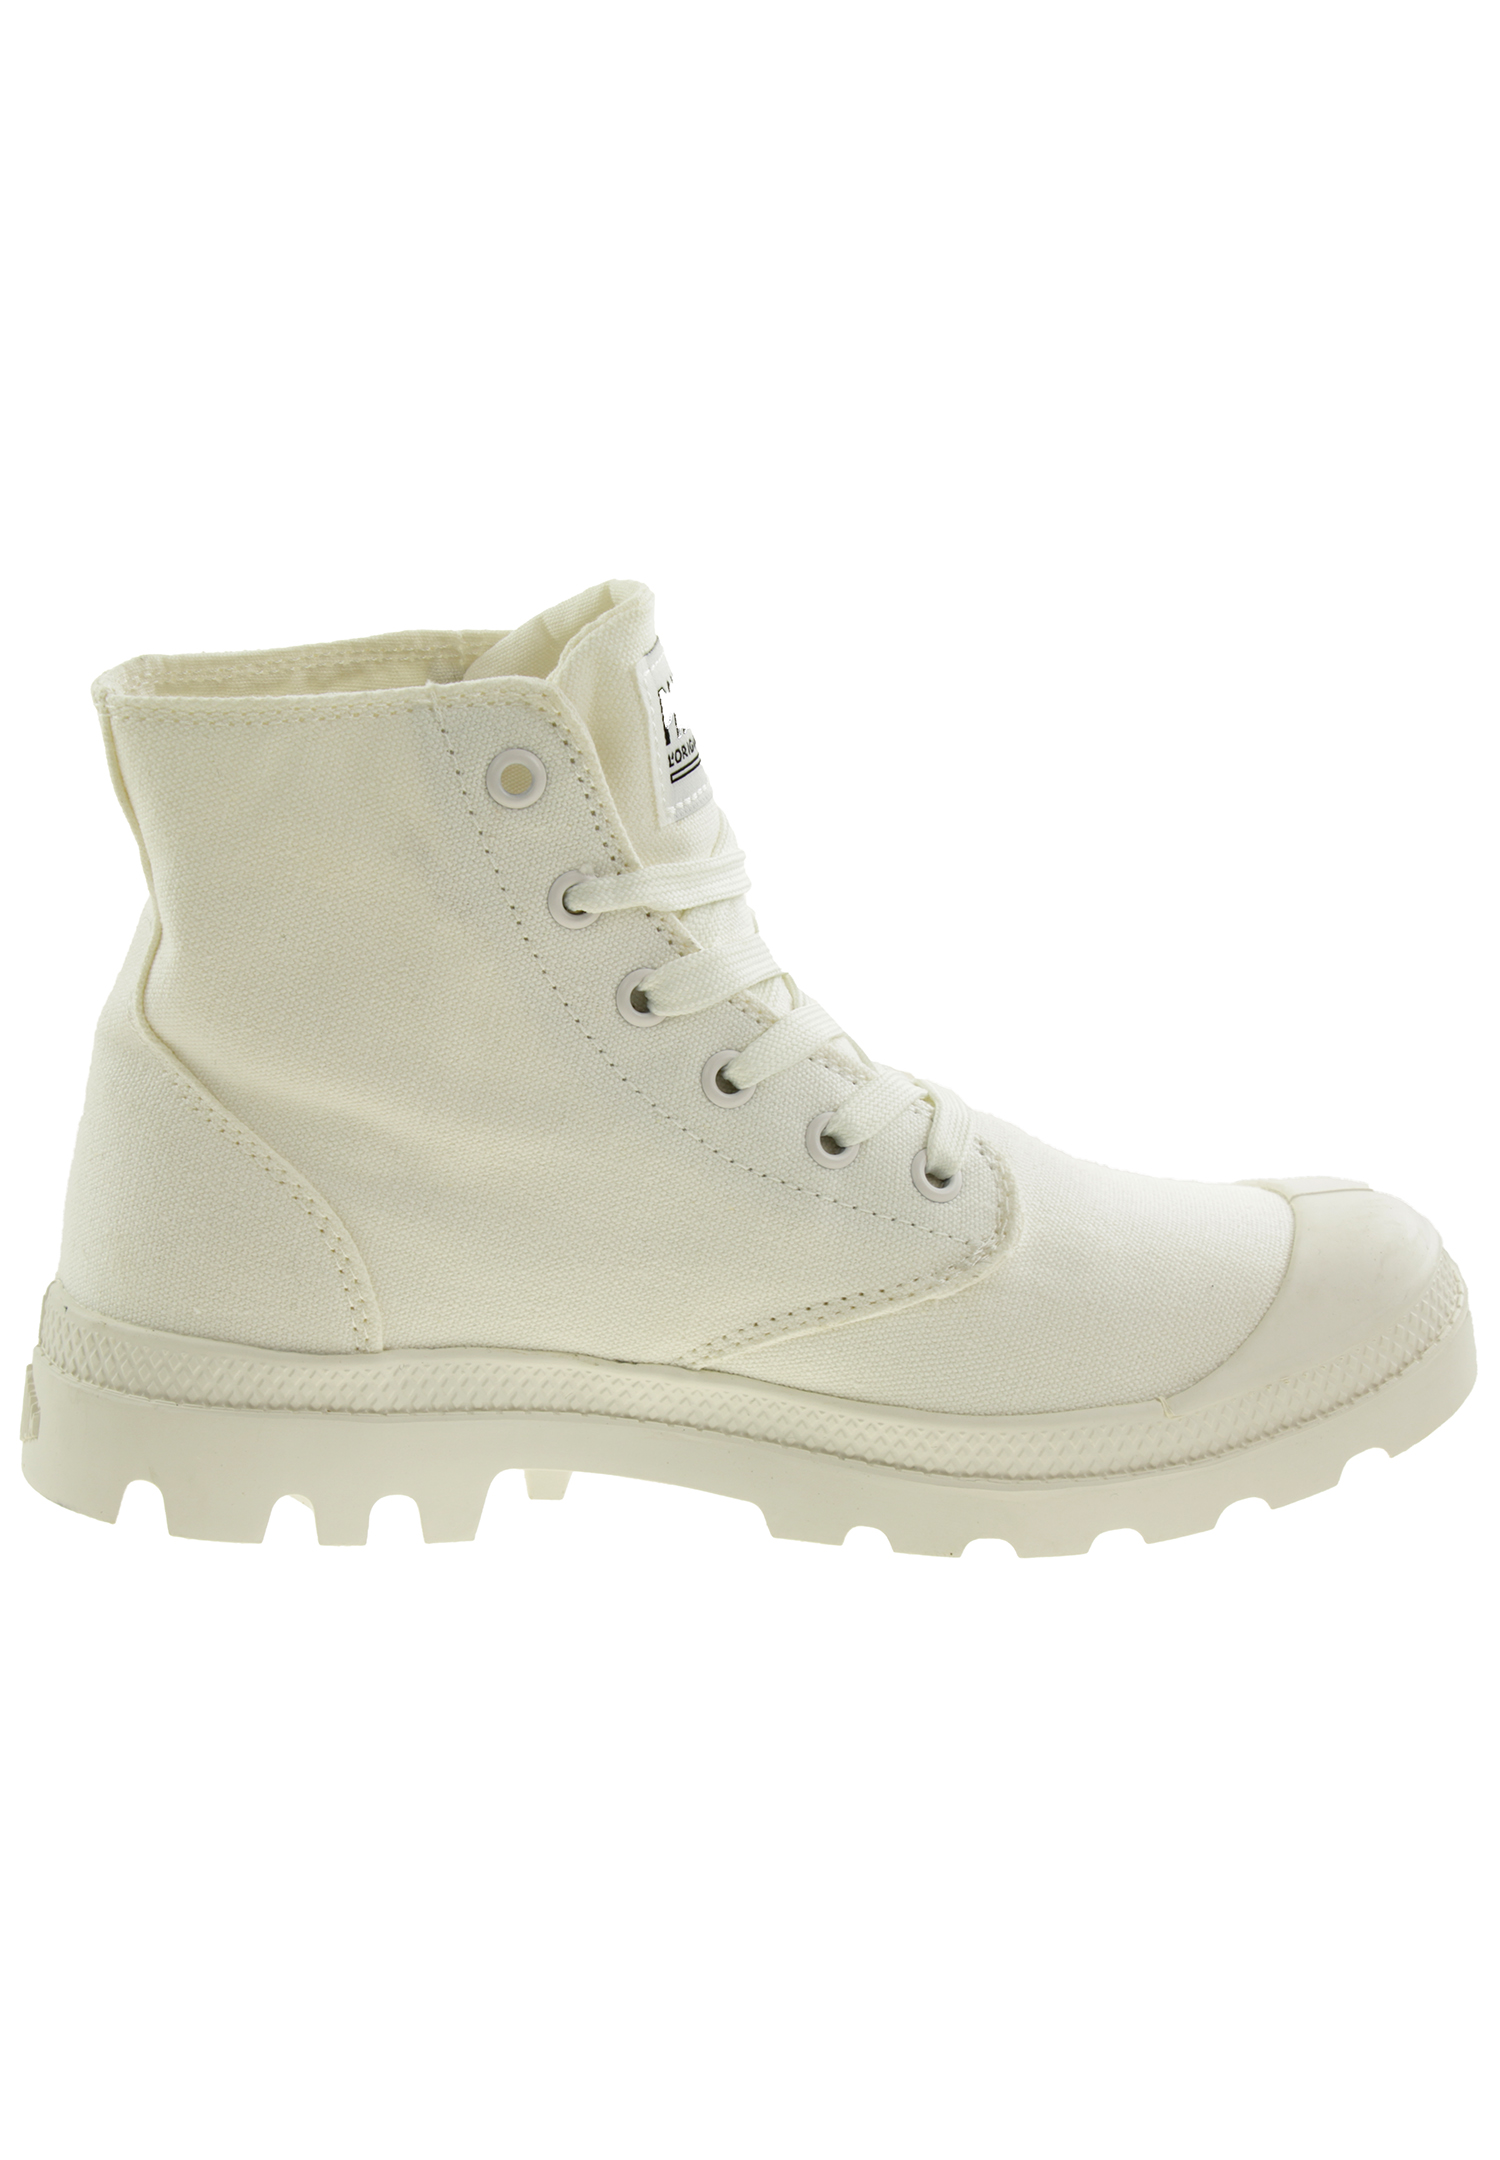 PALLADIUM Unisex Pampa Hi Mono Boots Stiefelette 73089 Weiß